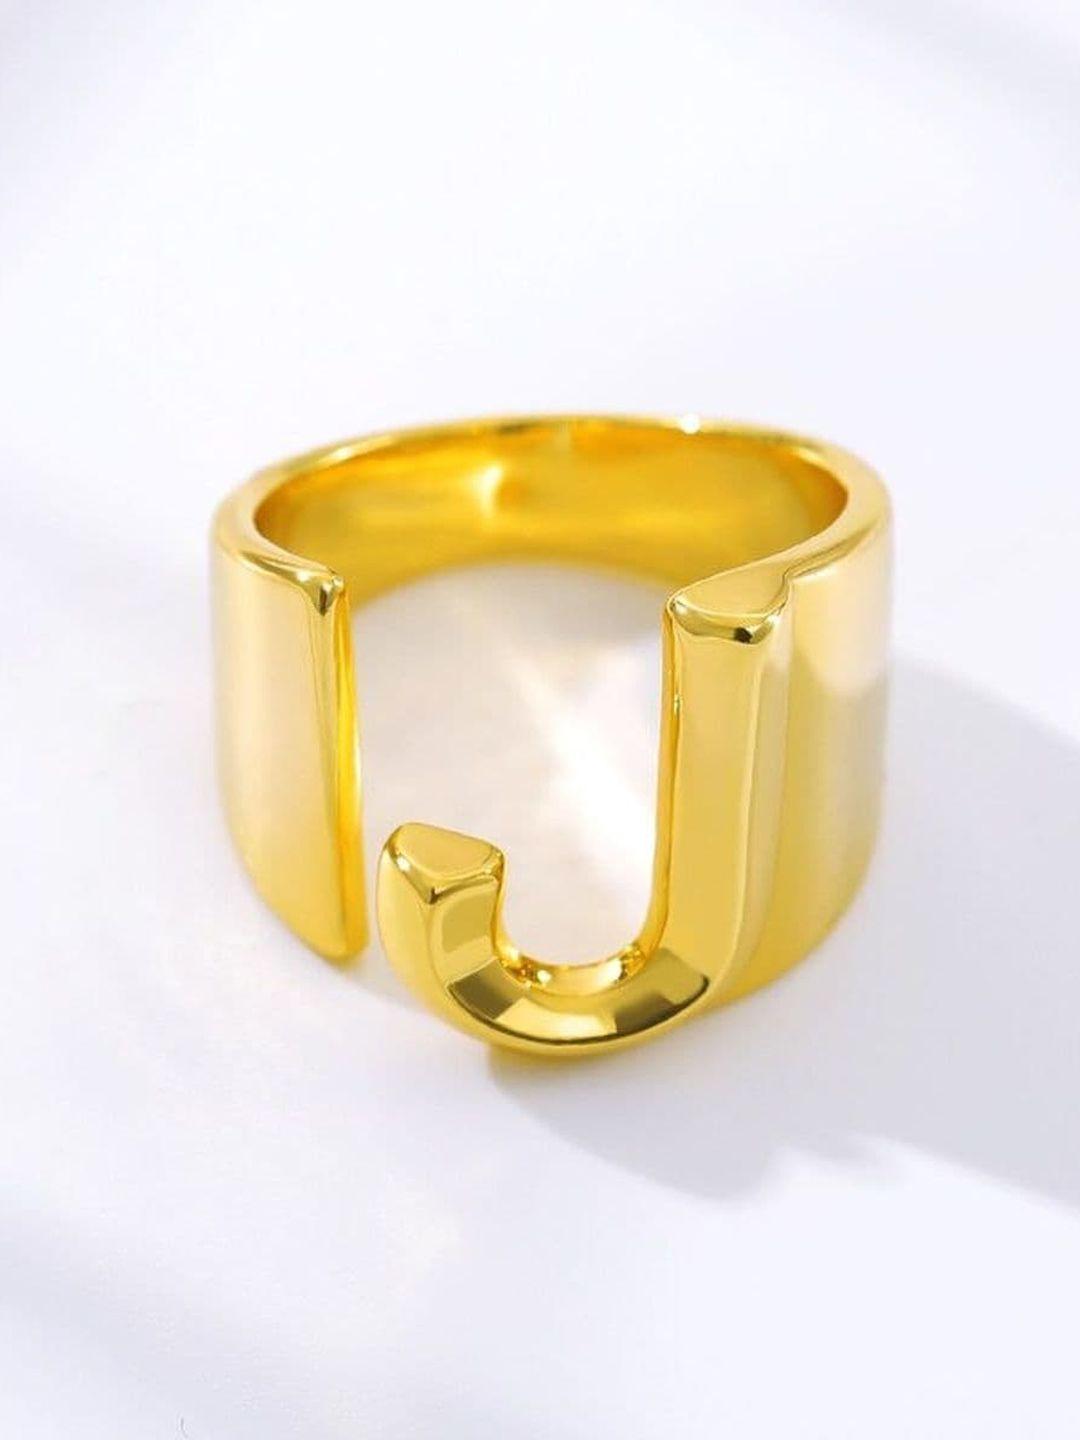 zivom 18k gold-plated initial letter j adjustable finger ring